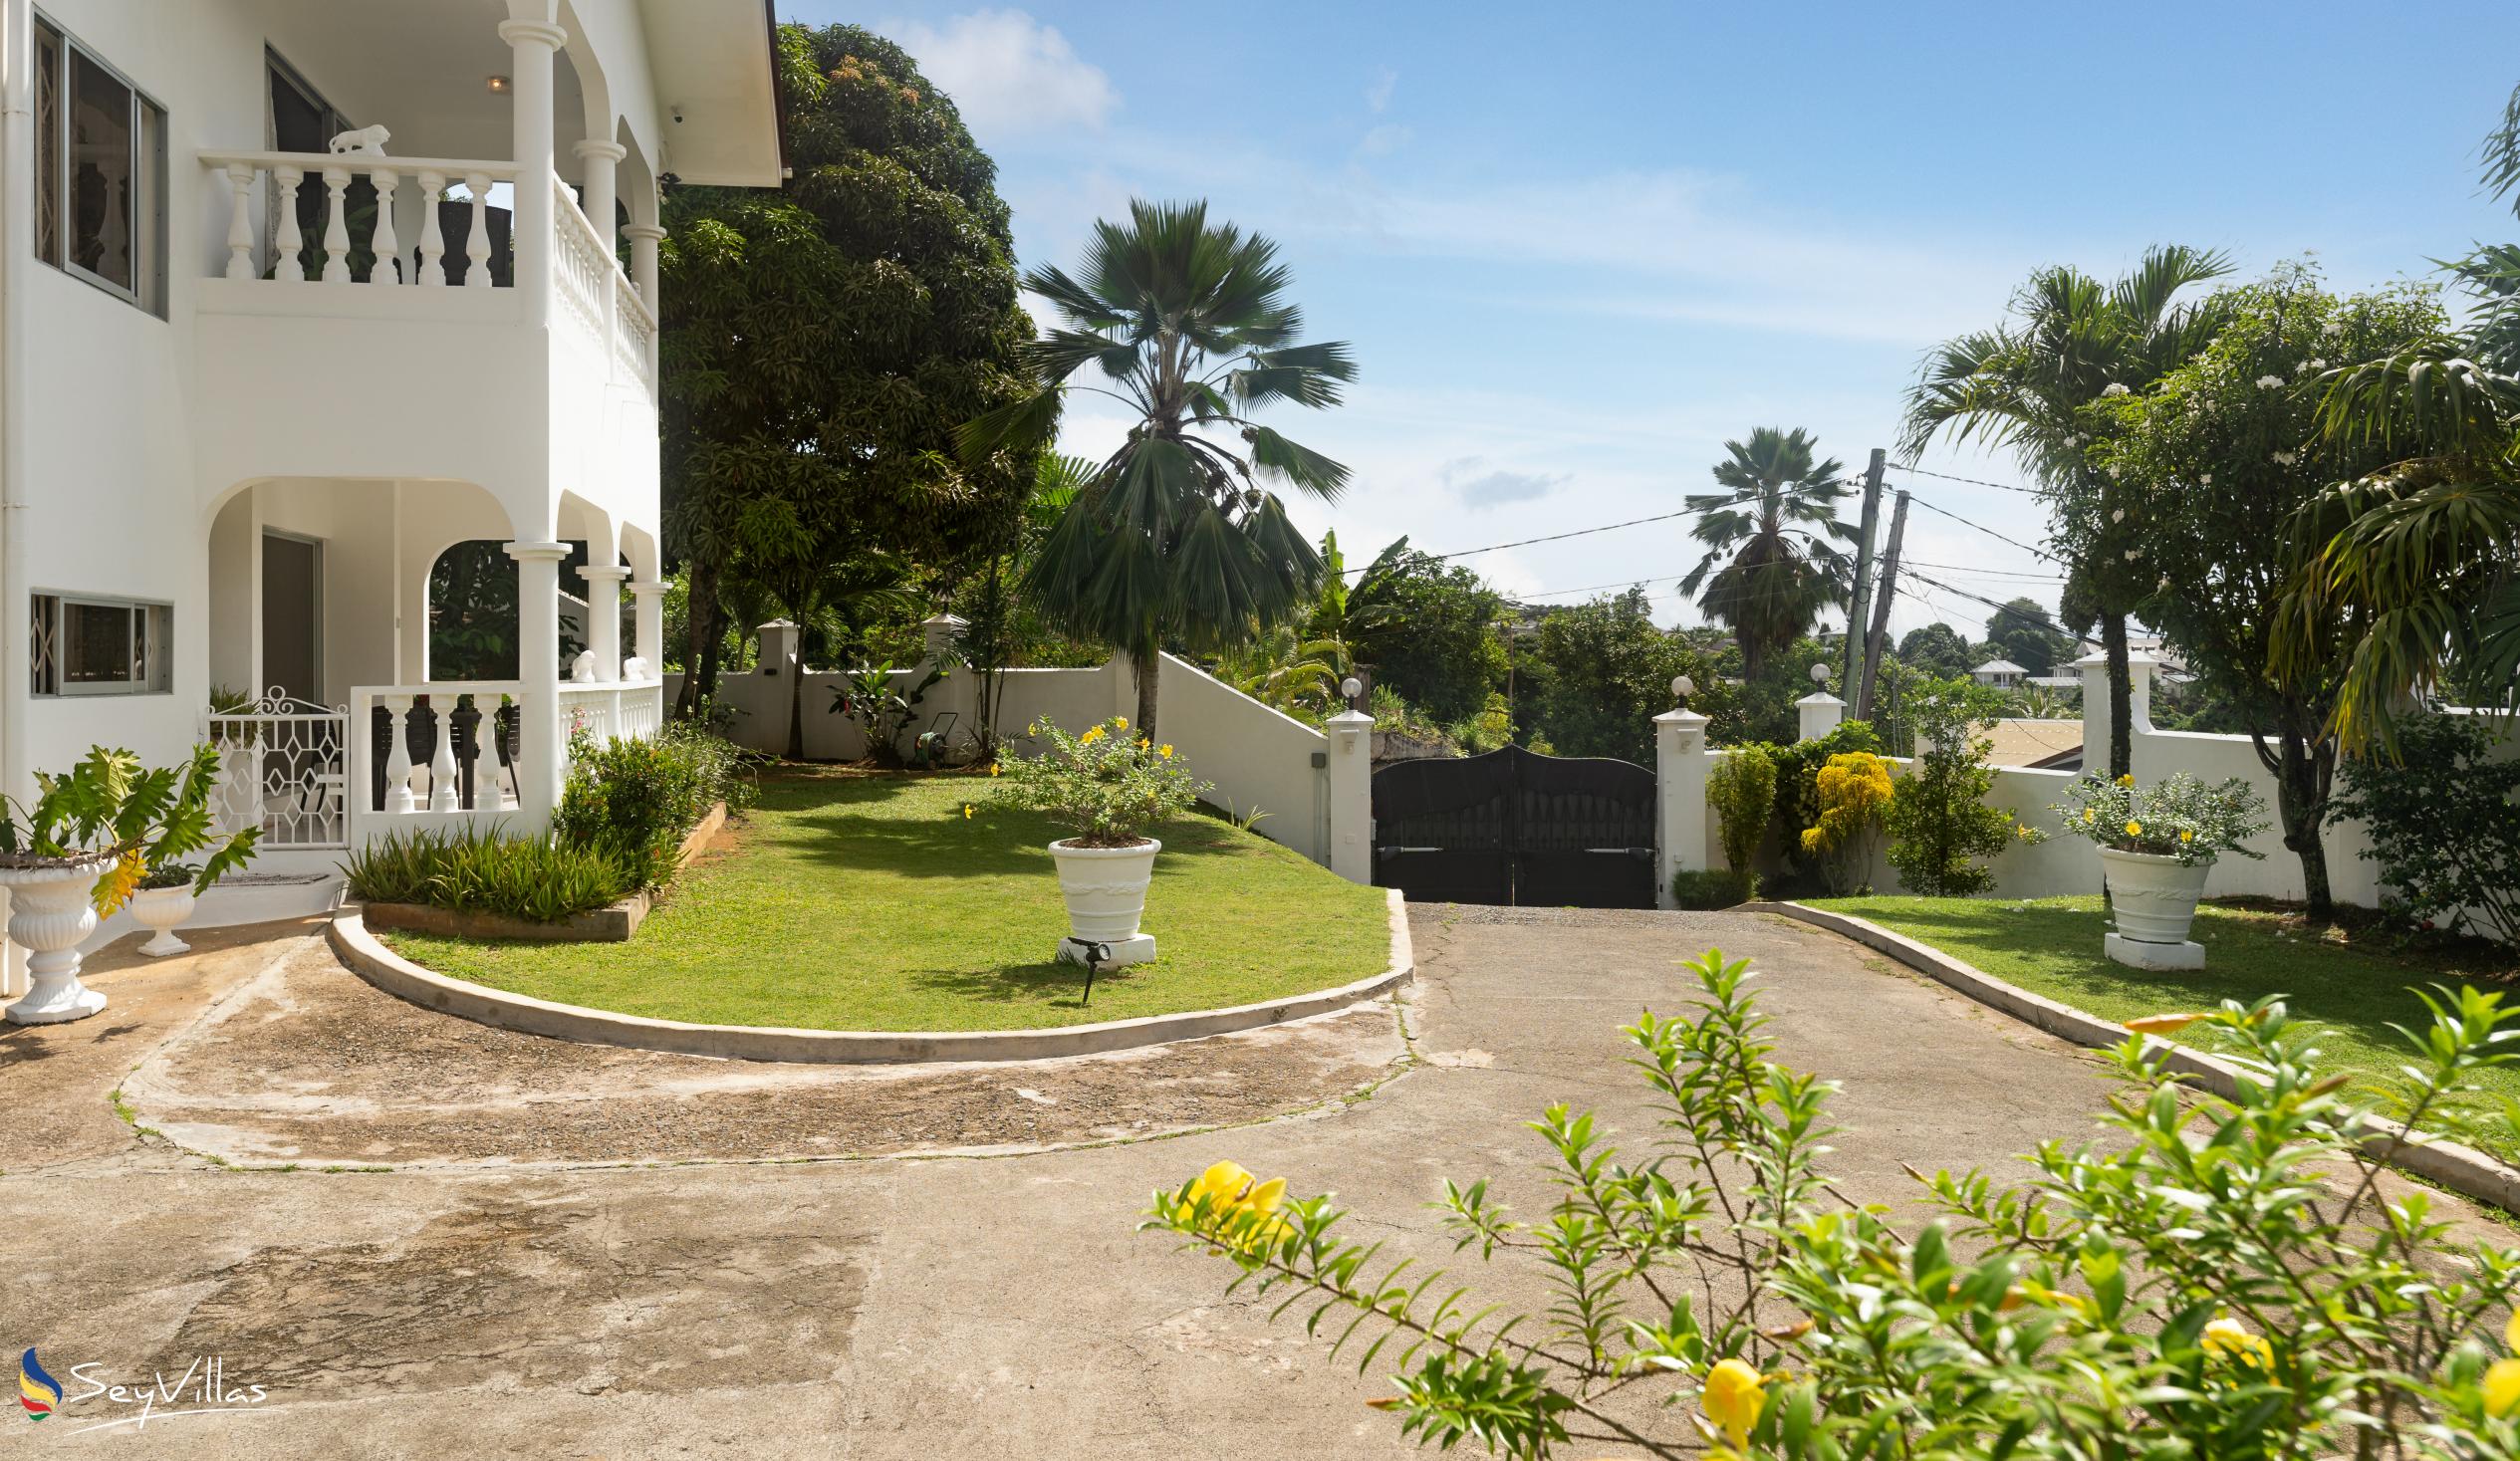 Foto 9: Villa Verde - Extérieur - Mahé (Seychelles)